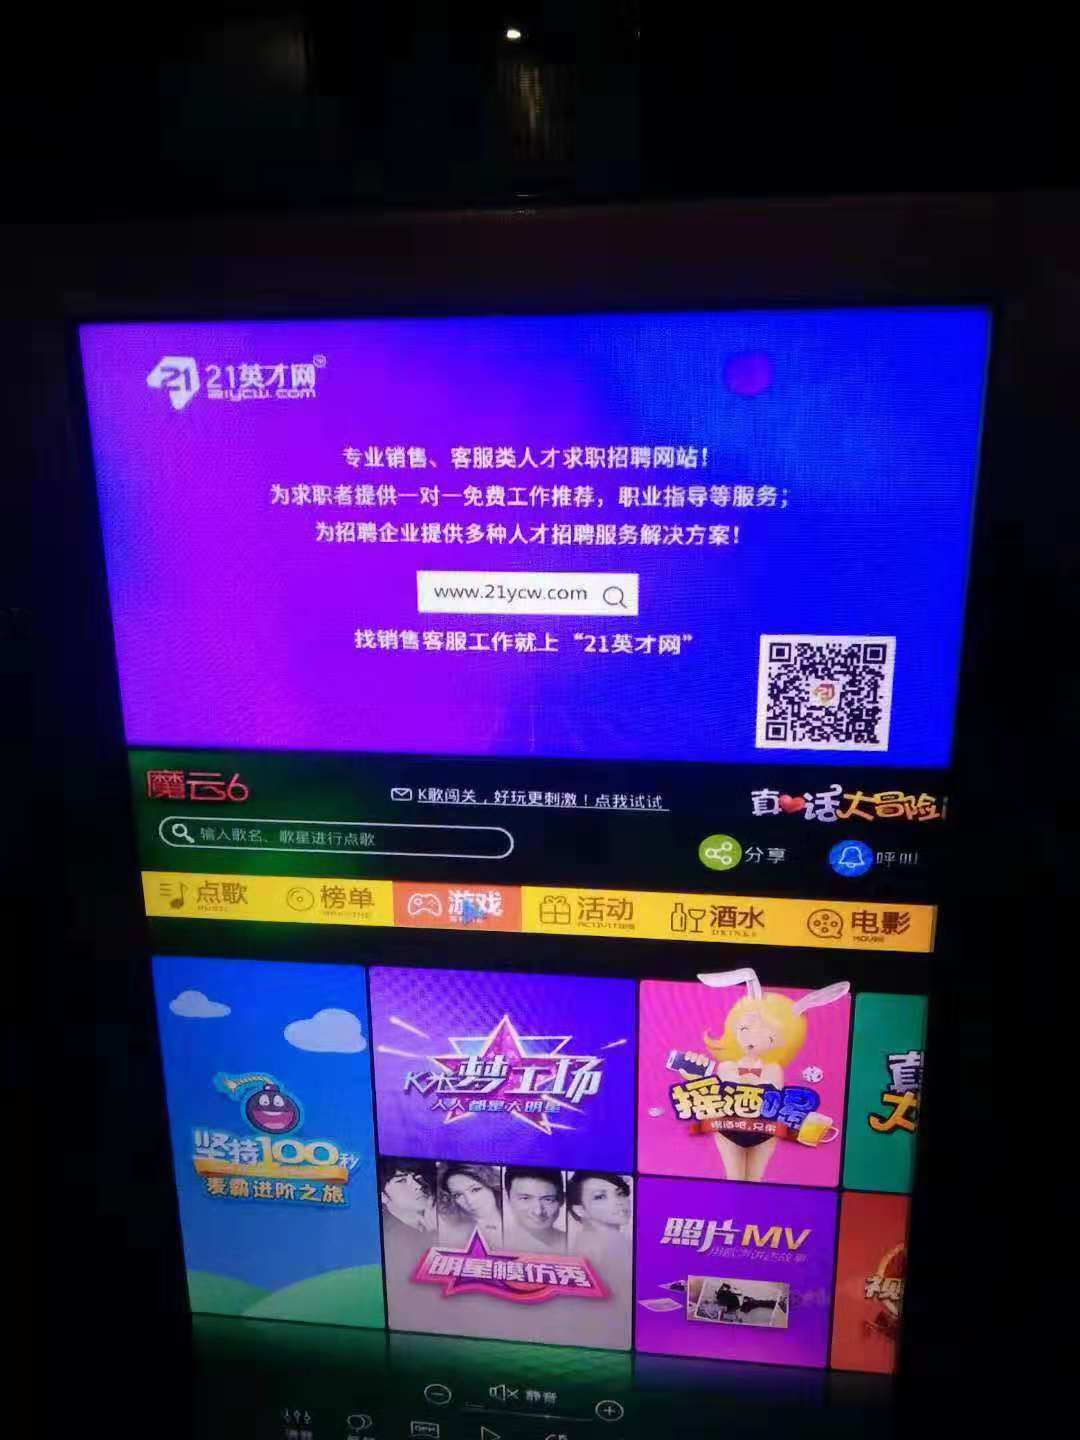 21英才网广告上线湖南嗨乐KTV点歌系统